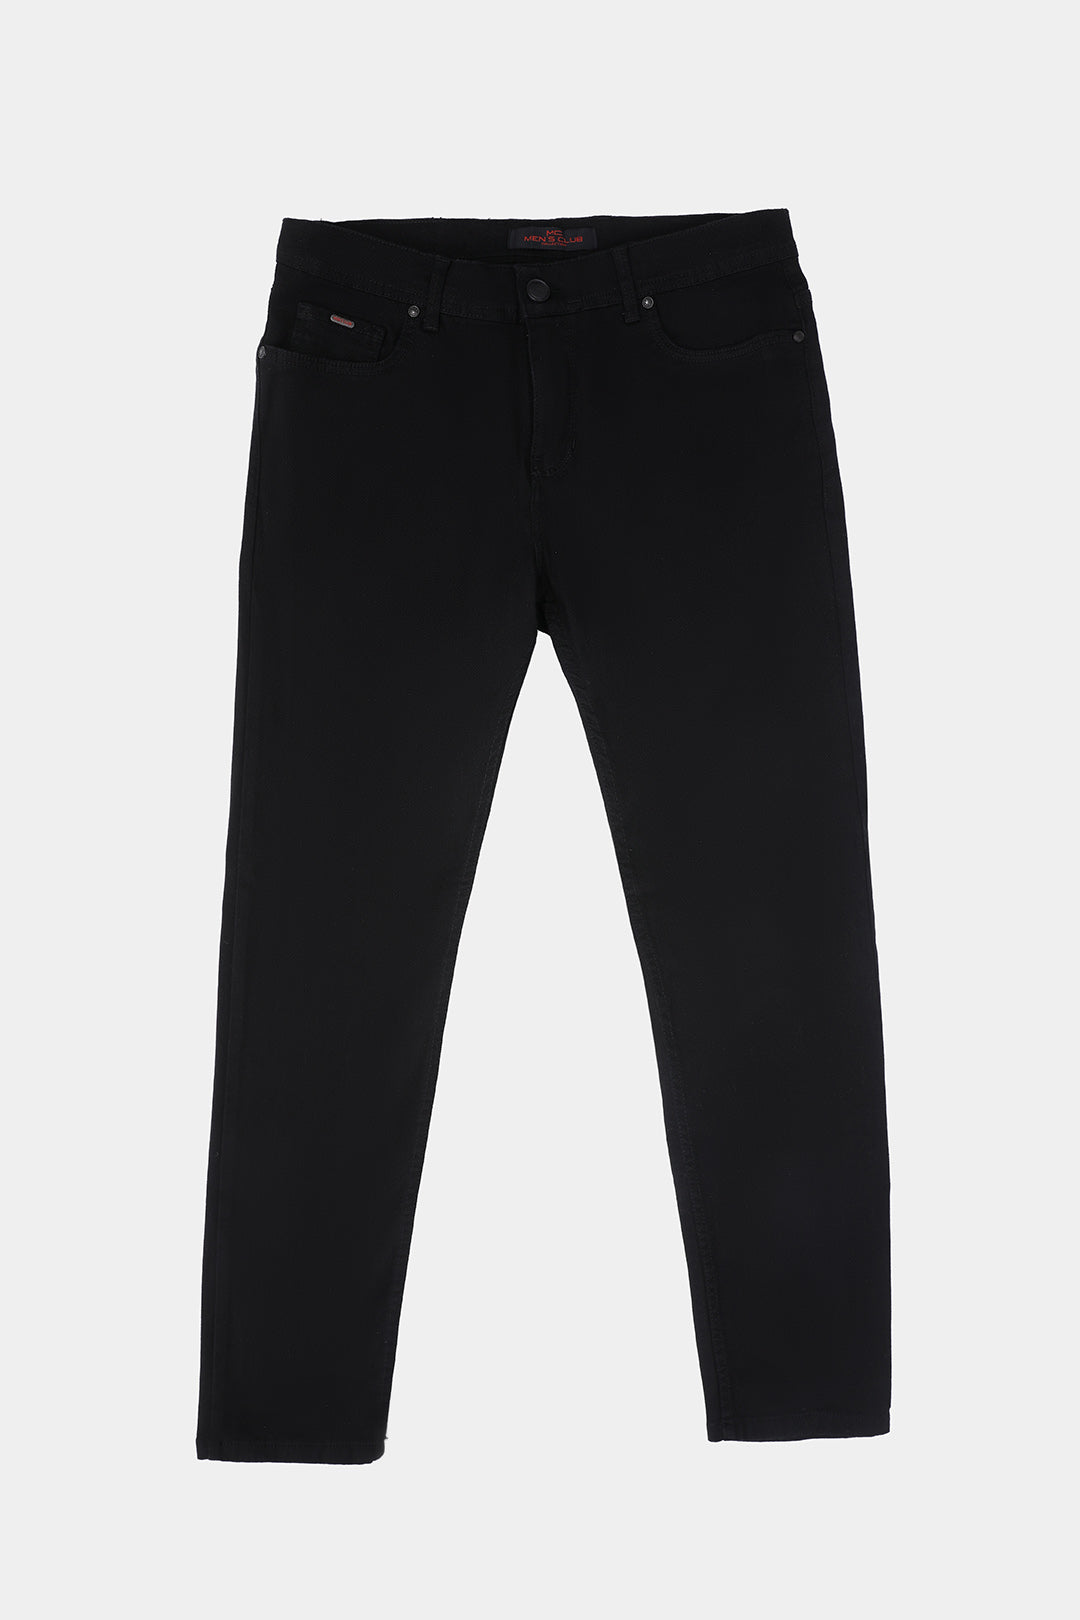 Black Slim Fit Jean Pants